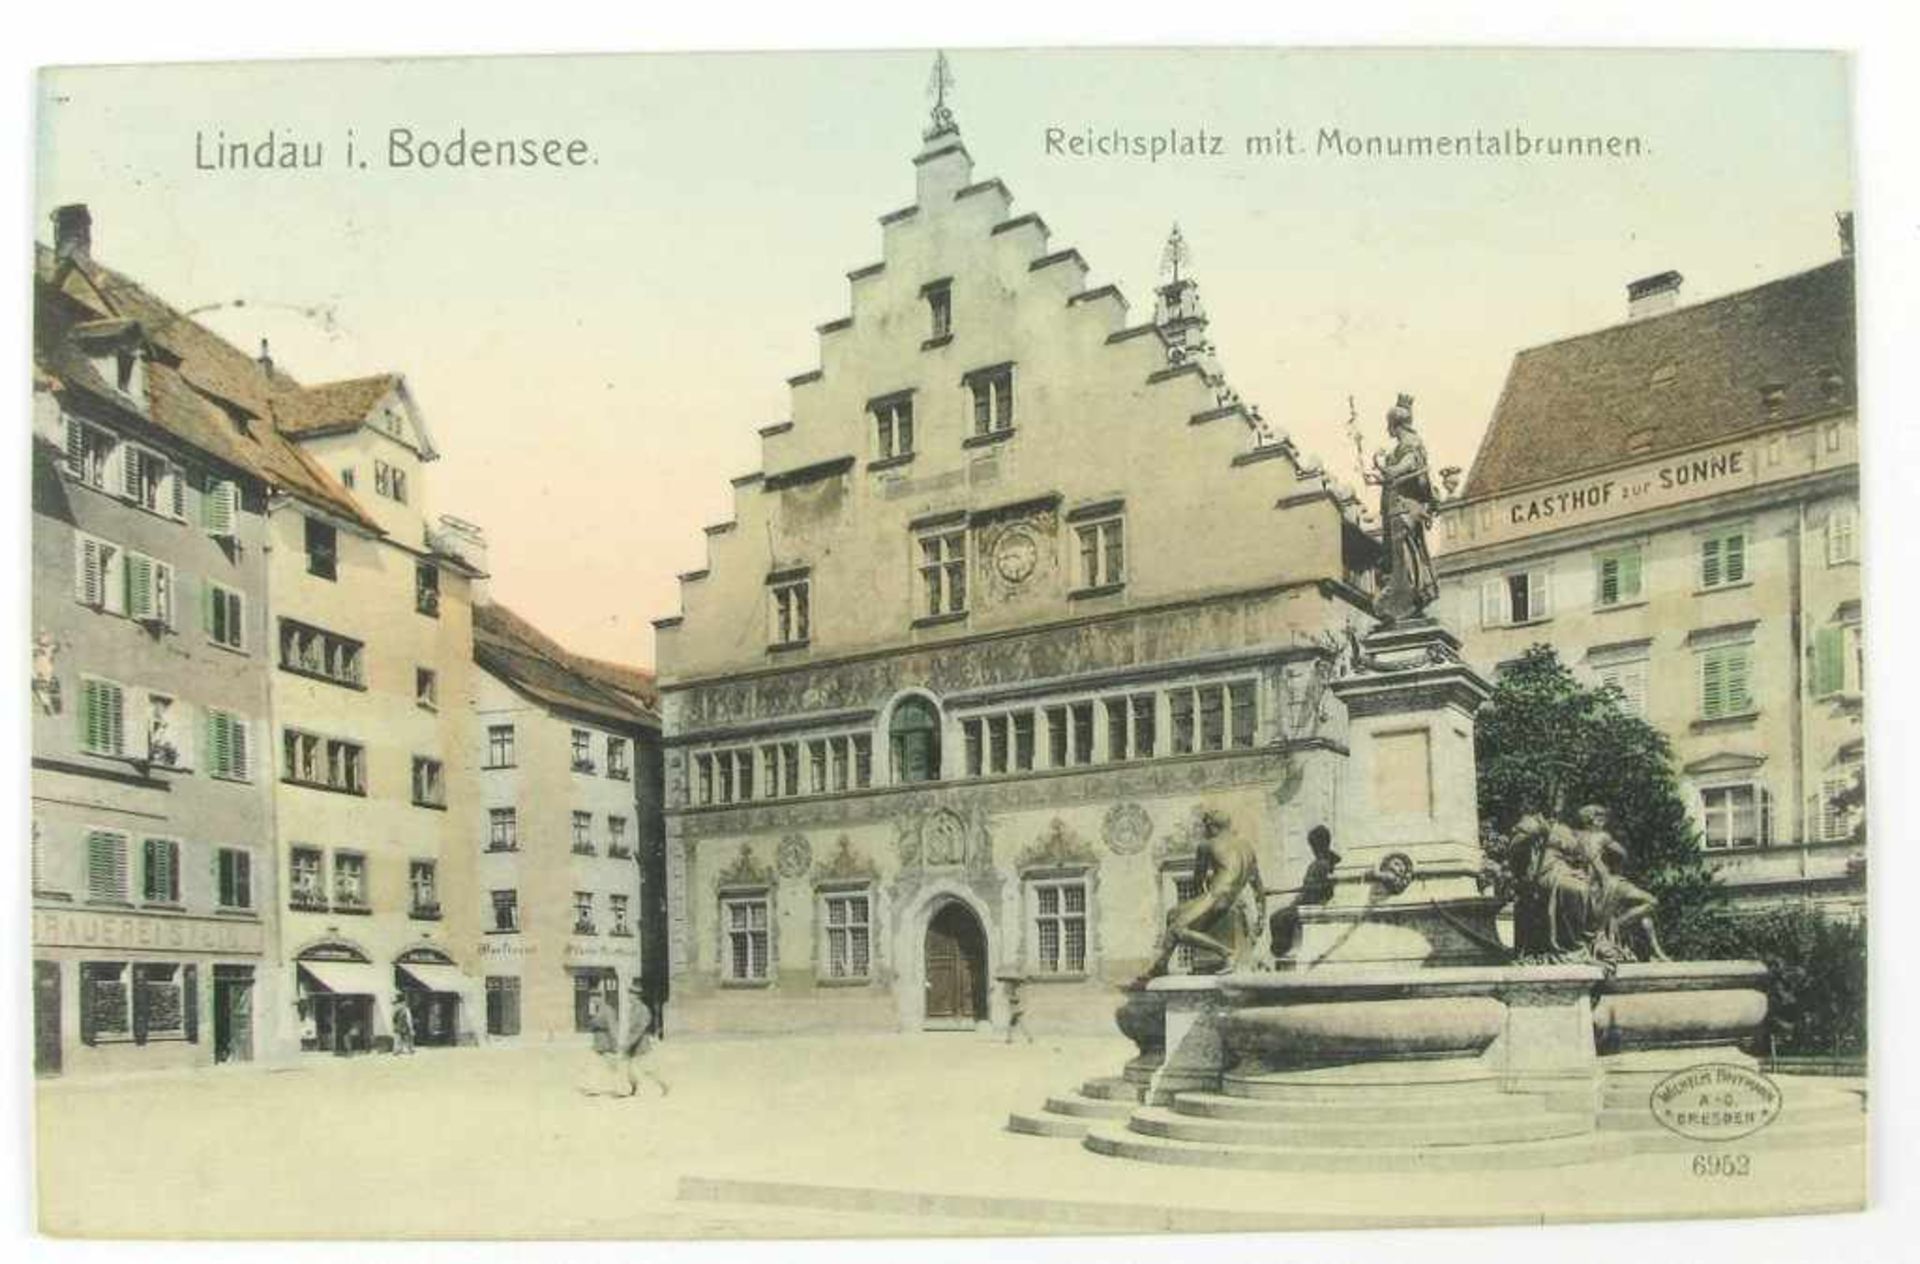 Postkarte Lindau. "Reichsplatz mit Monumentalbrunnen". Verlag Wilhelm Hoffmann Dresden. Gelaufen